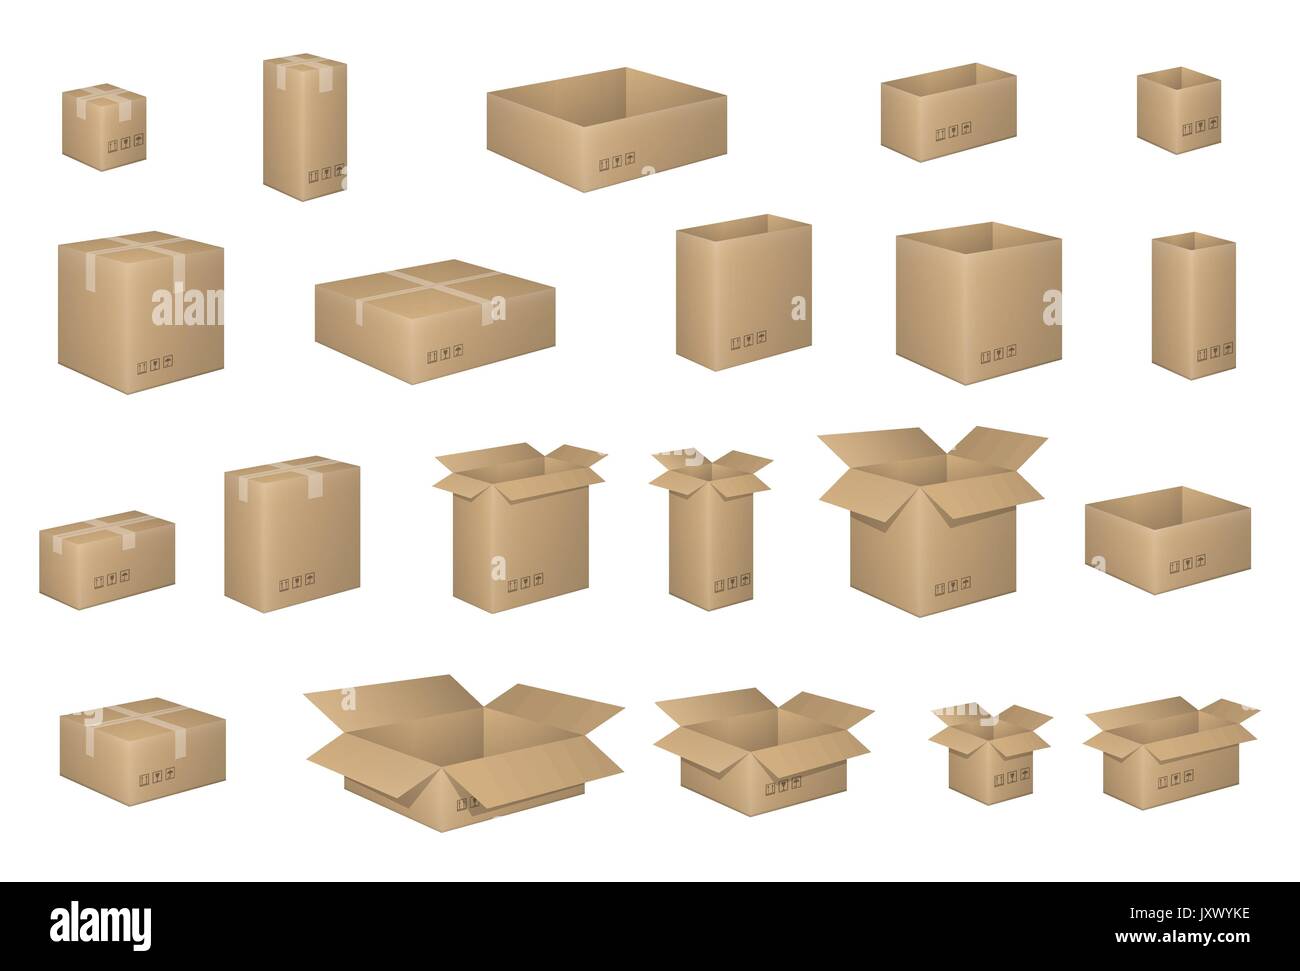 Große isometrische Kartons isoliert auf Weiss. Karton organisiert von Schichten. Vector Illustration von Verpackungen. Lieferung Verpackung offenen und geschlossenen Karton mit schwachen Zeichen. Stock Vektor